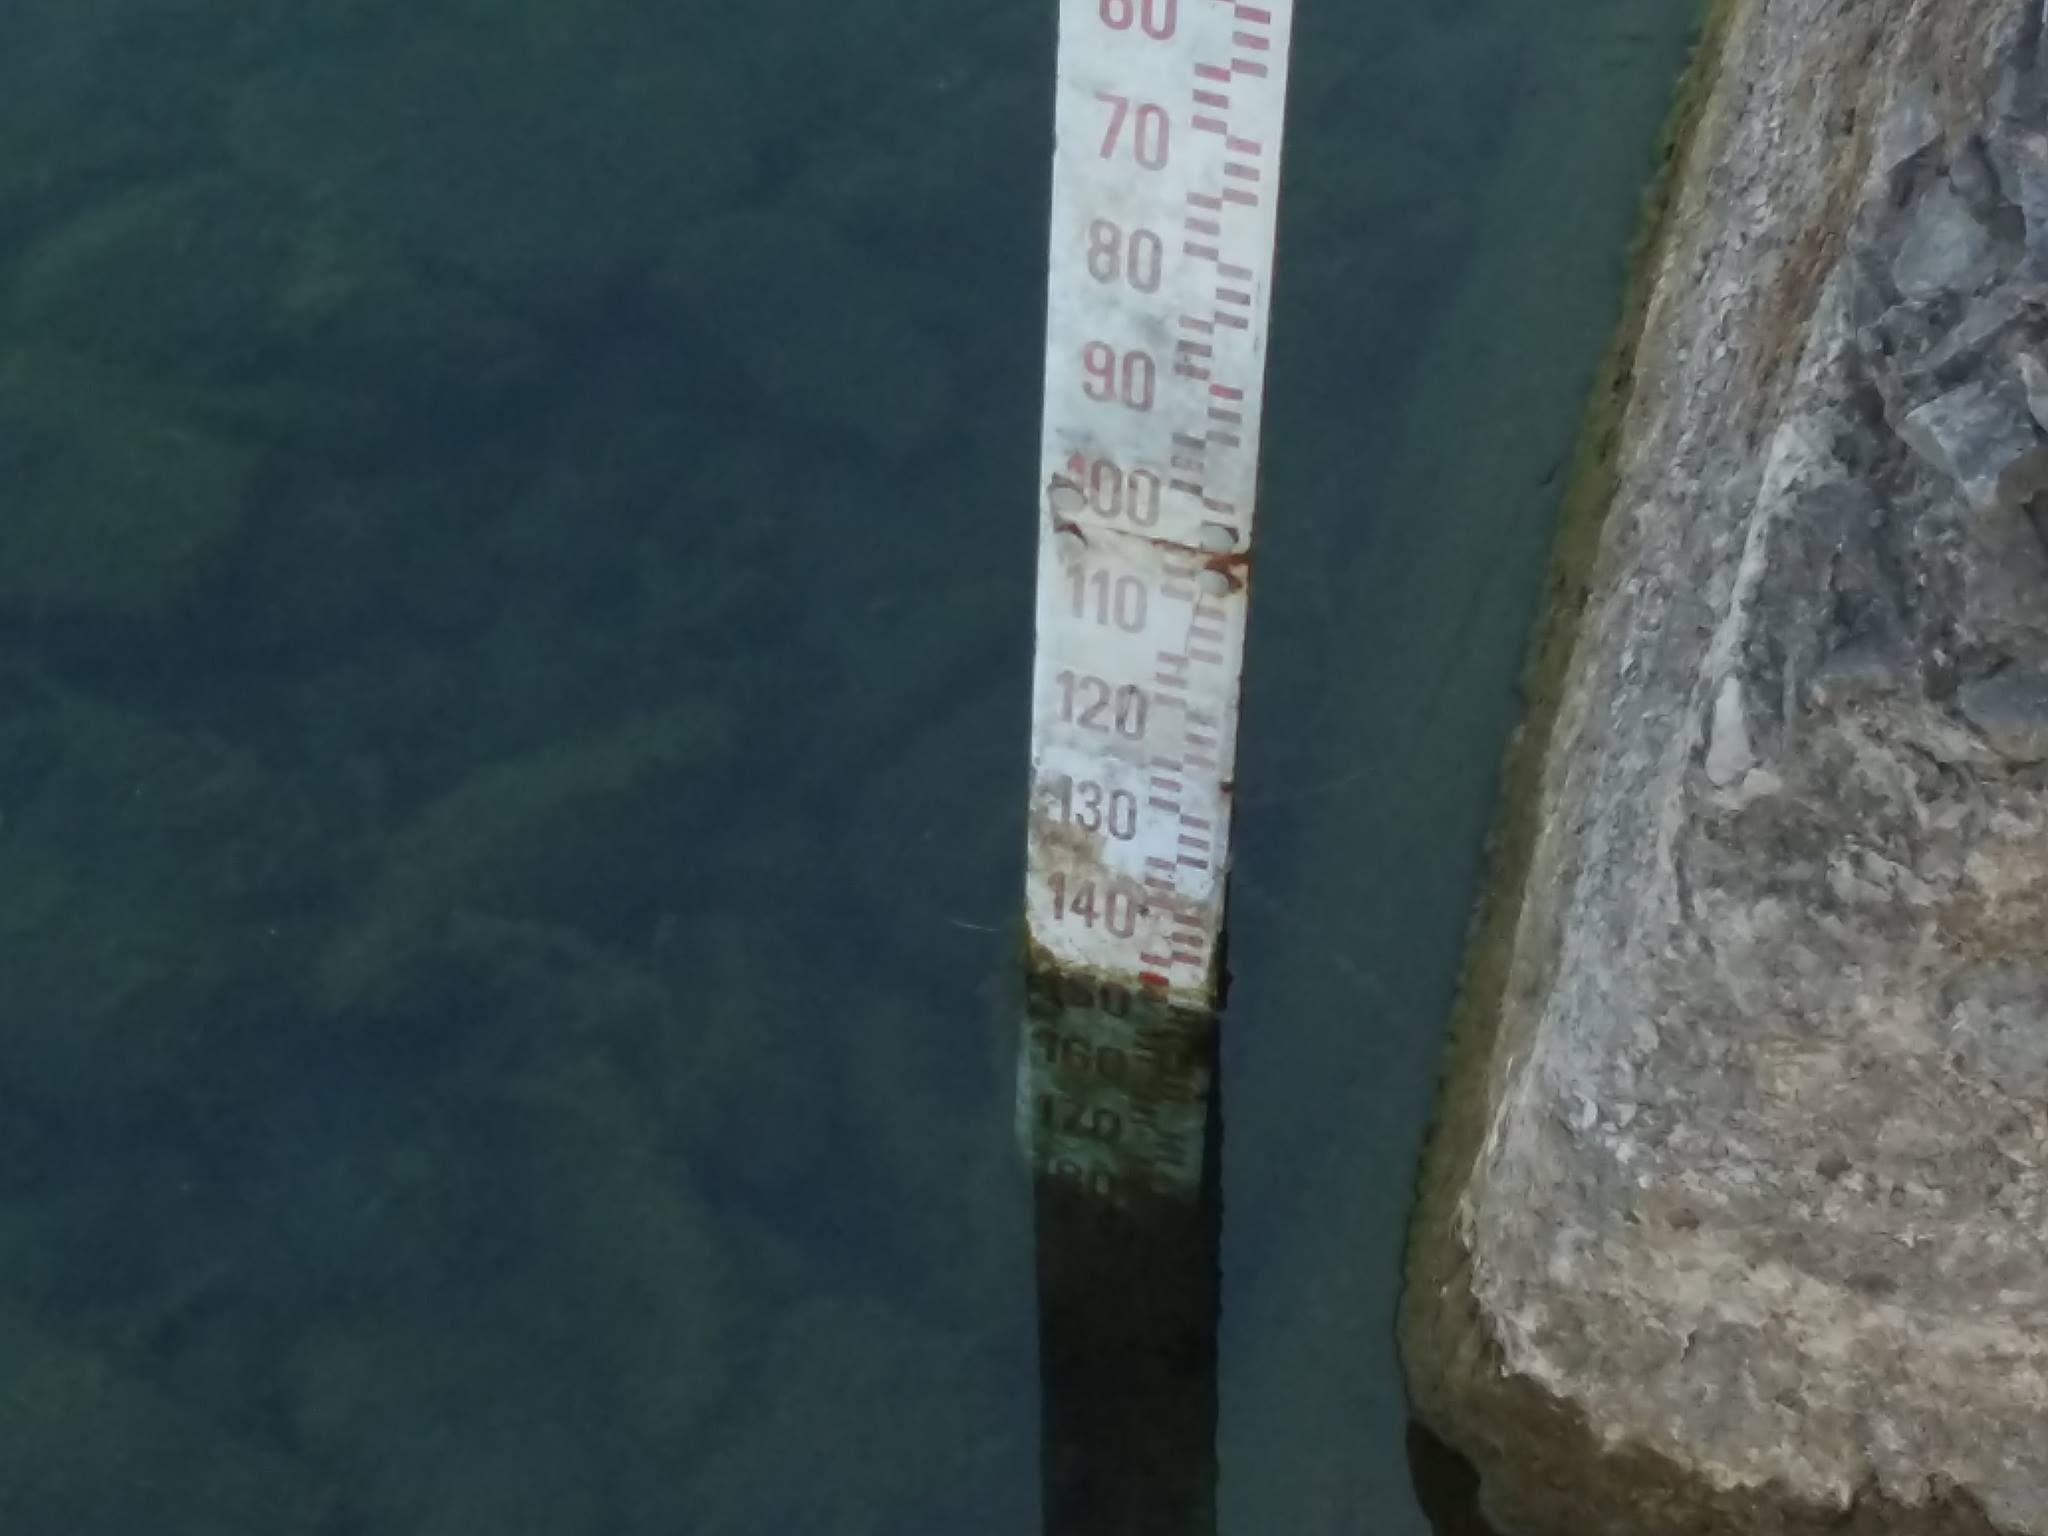 23 giugno. Il livello del lago di Bracciano è a -148 centimetri